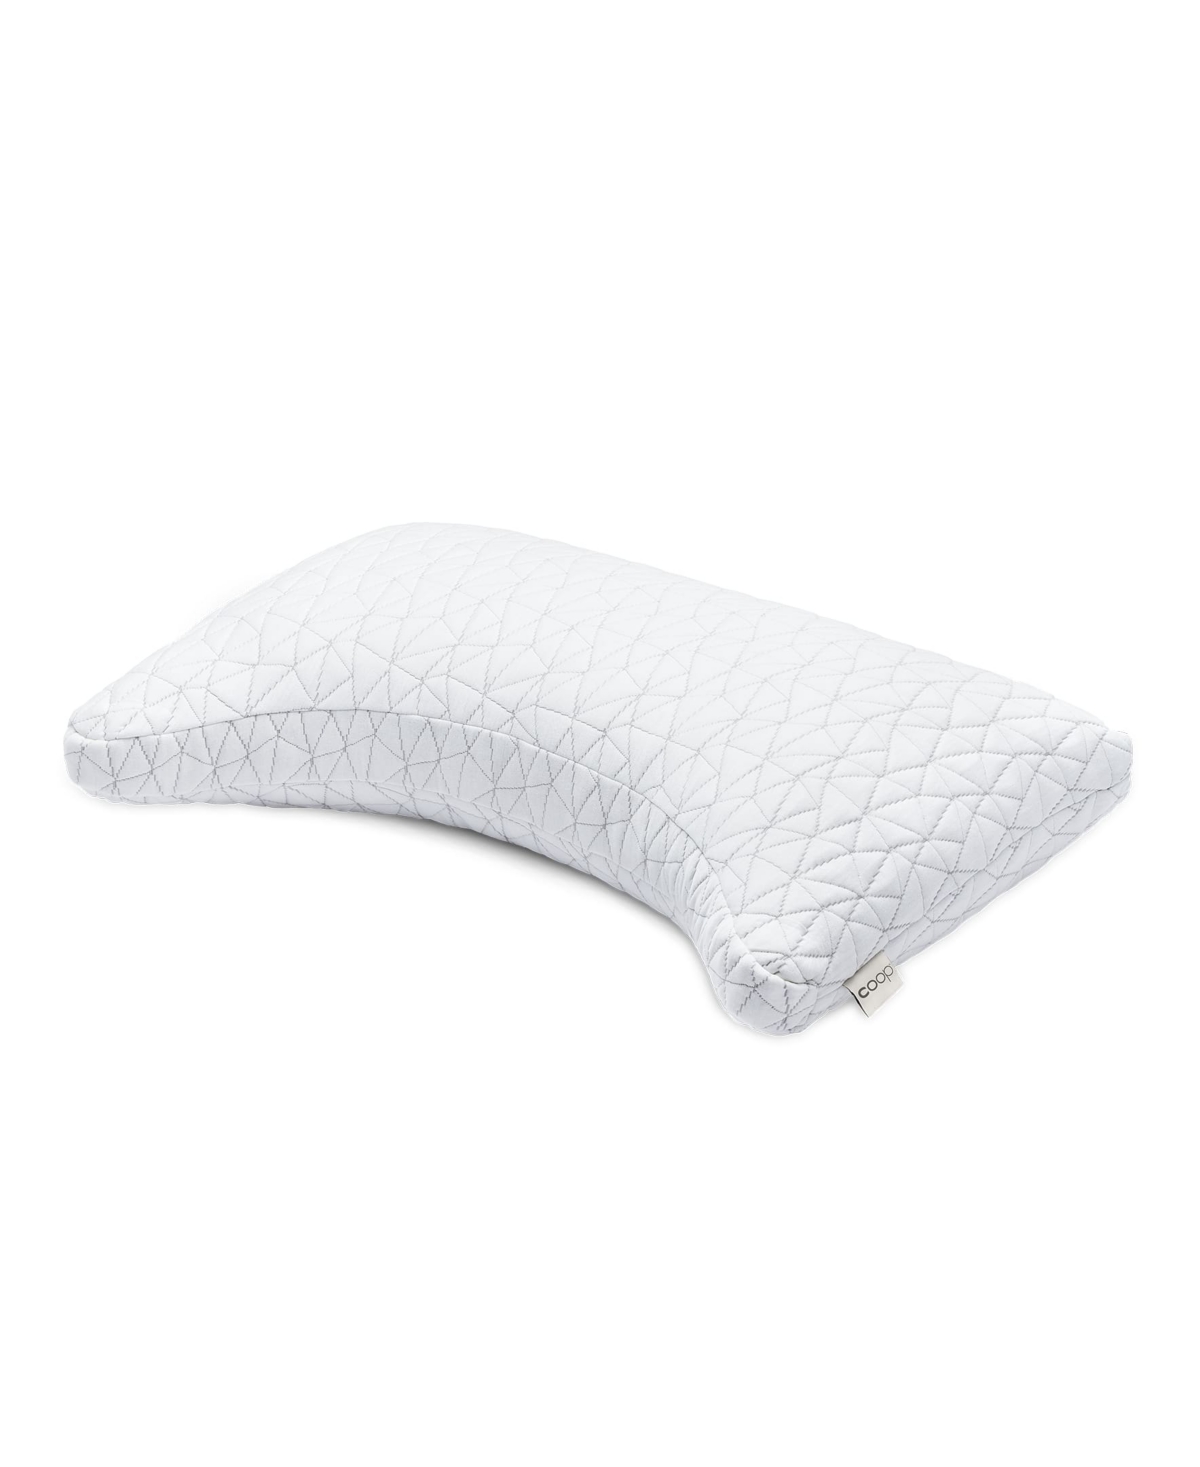 Shop Coop Sleep Goods The Original Crescent Adjustable Memory Foam Pillow, Queen In White